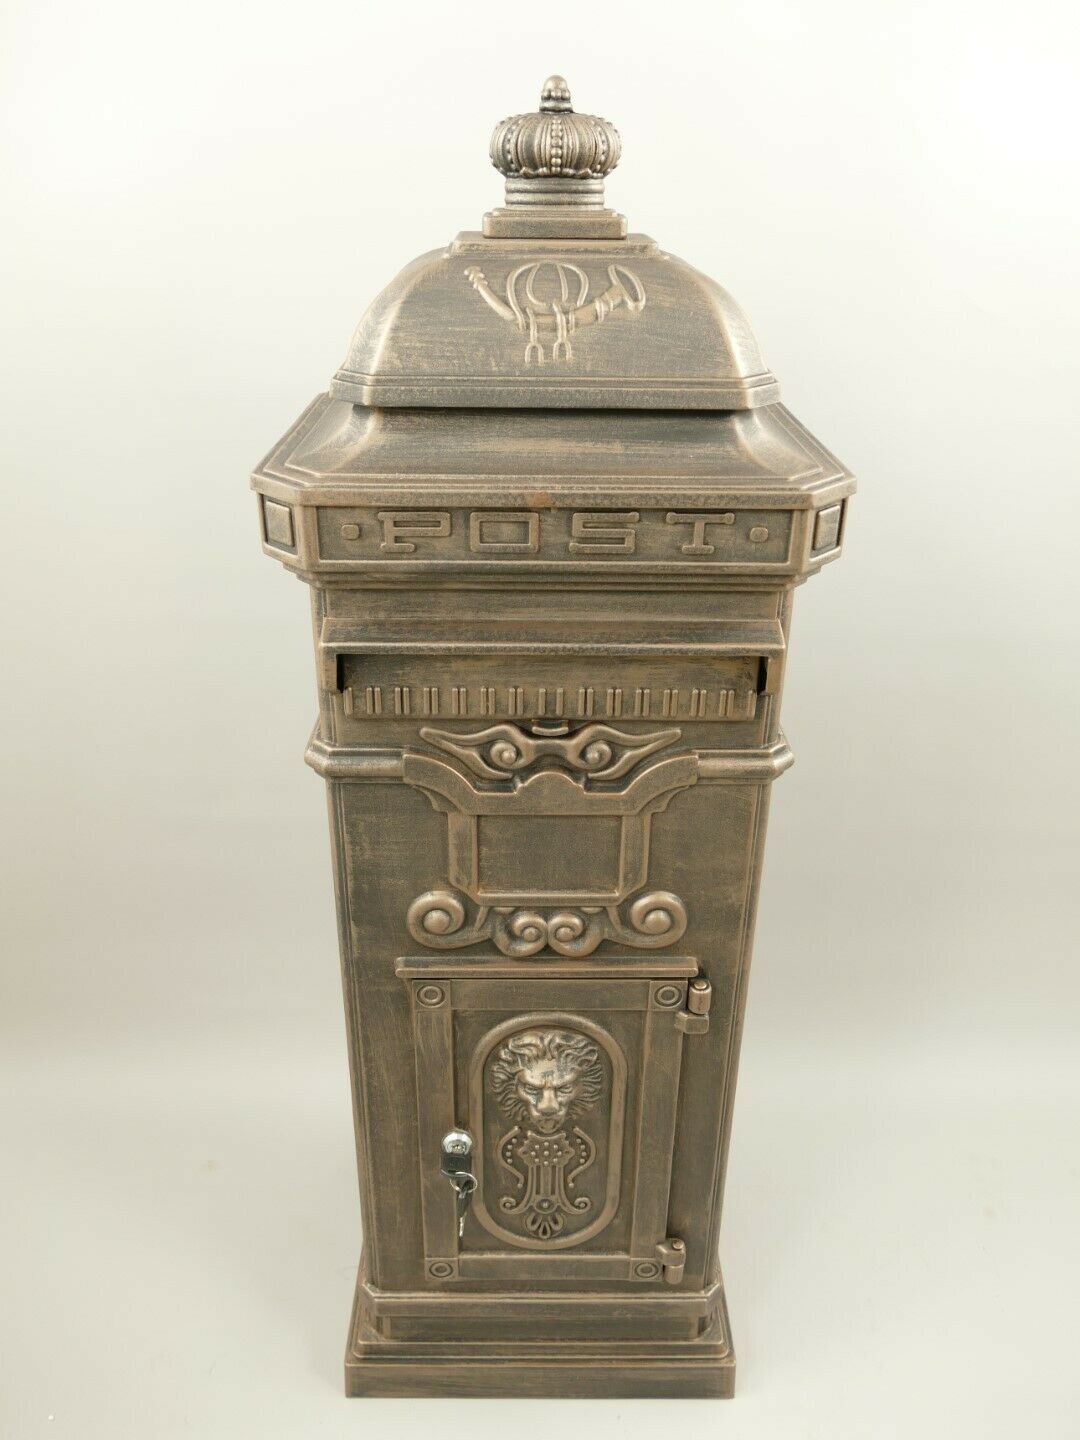 Englischer Briefkasten Standbriefkasten rustikal braun Antik Stil Aluguß H.102cm 